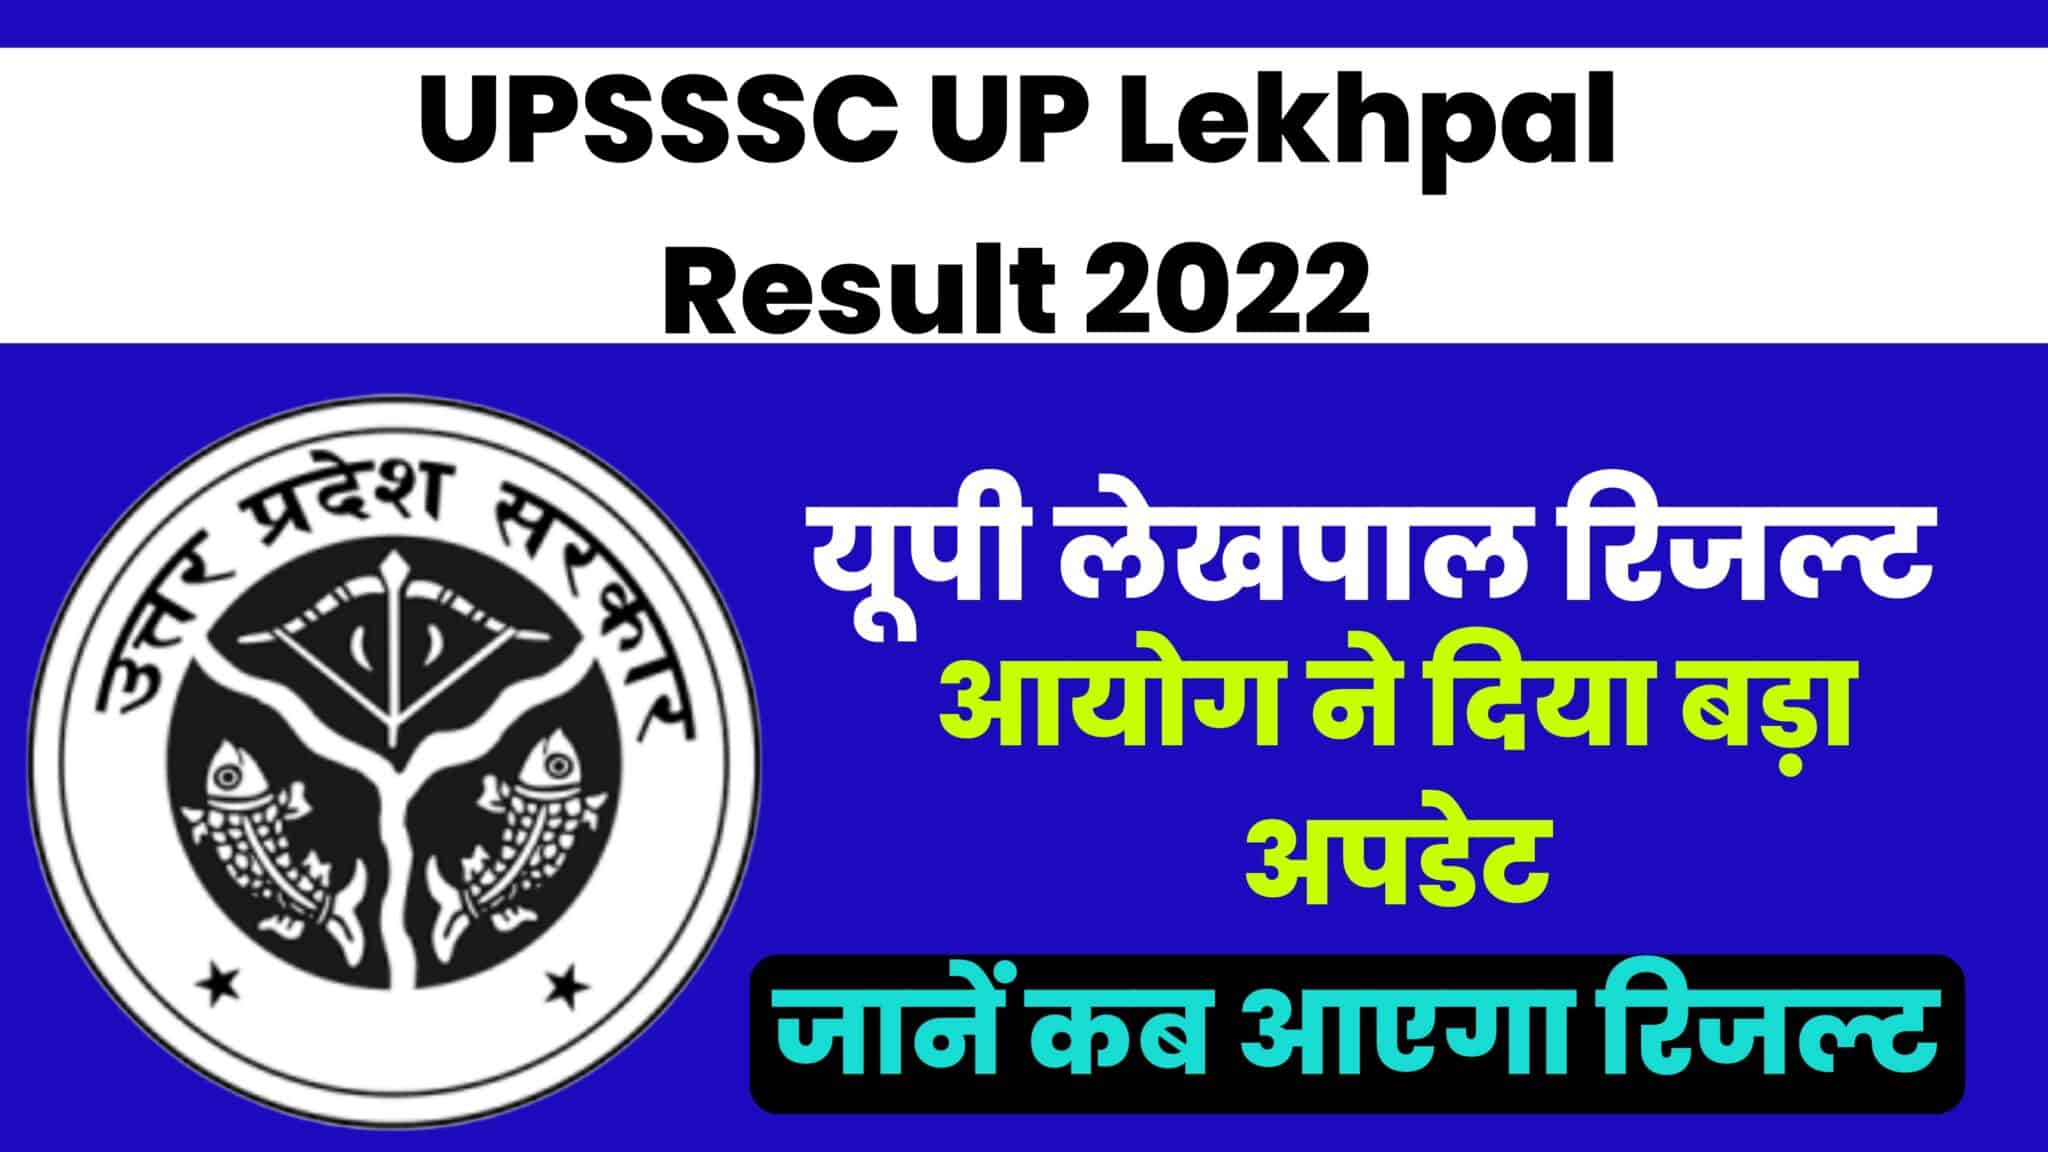 UP Lekhpal Result 2022 : जल्द जारी किए जाएंगे लेखपाल रिजल्ट, आयोग ने दिया बड़ा अपडेट